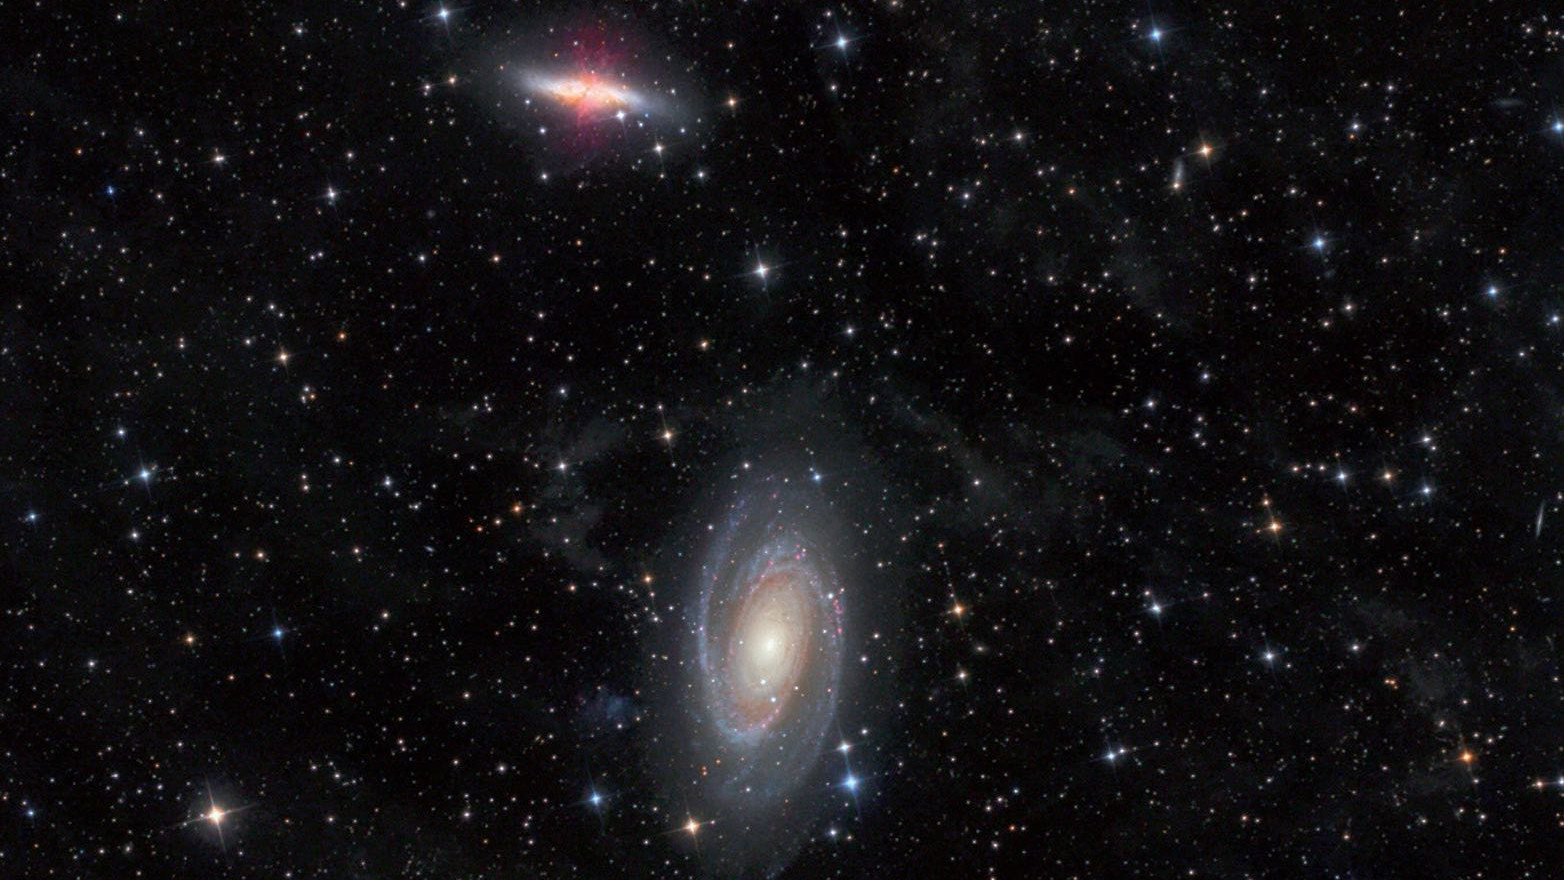 Galaxiile M 81 și M 82 din constelația Ursa Mare, fotografiate cu un telescop Newton de 4,5 inch la o distanță focală de 440 mm. Michael Deger / CCD Guide